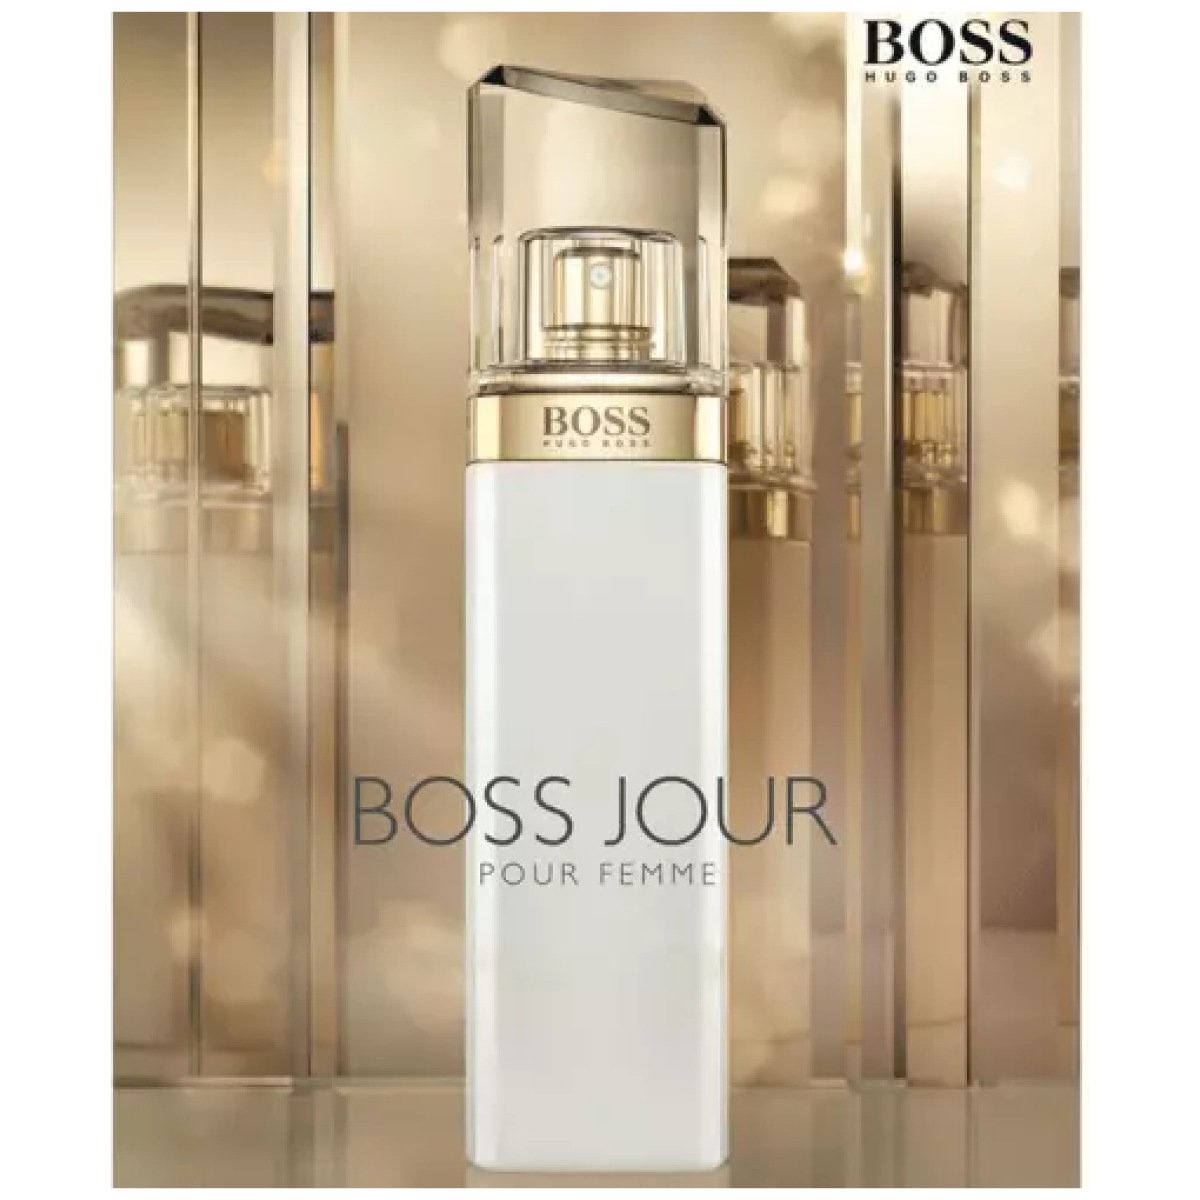 Hugo Boss Jour Pour Femme EDP Perfume For Women 75 ml